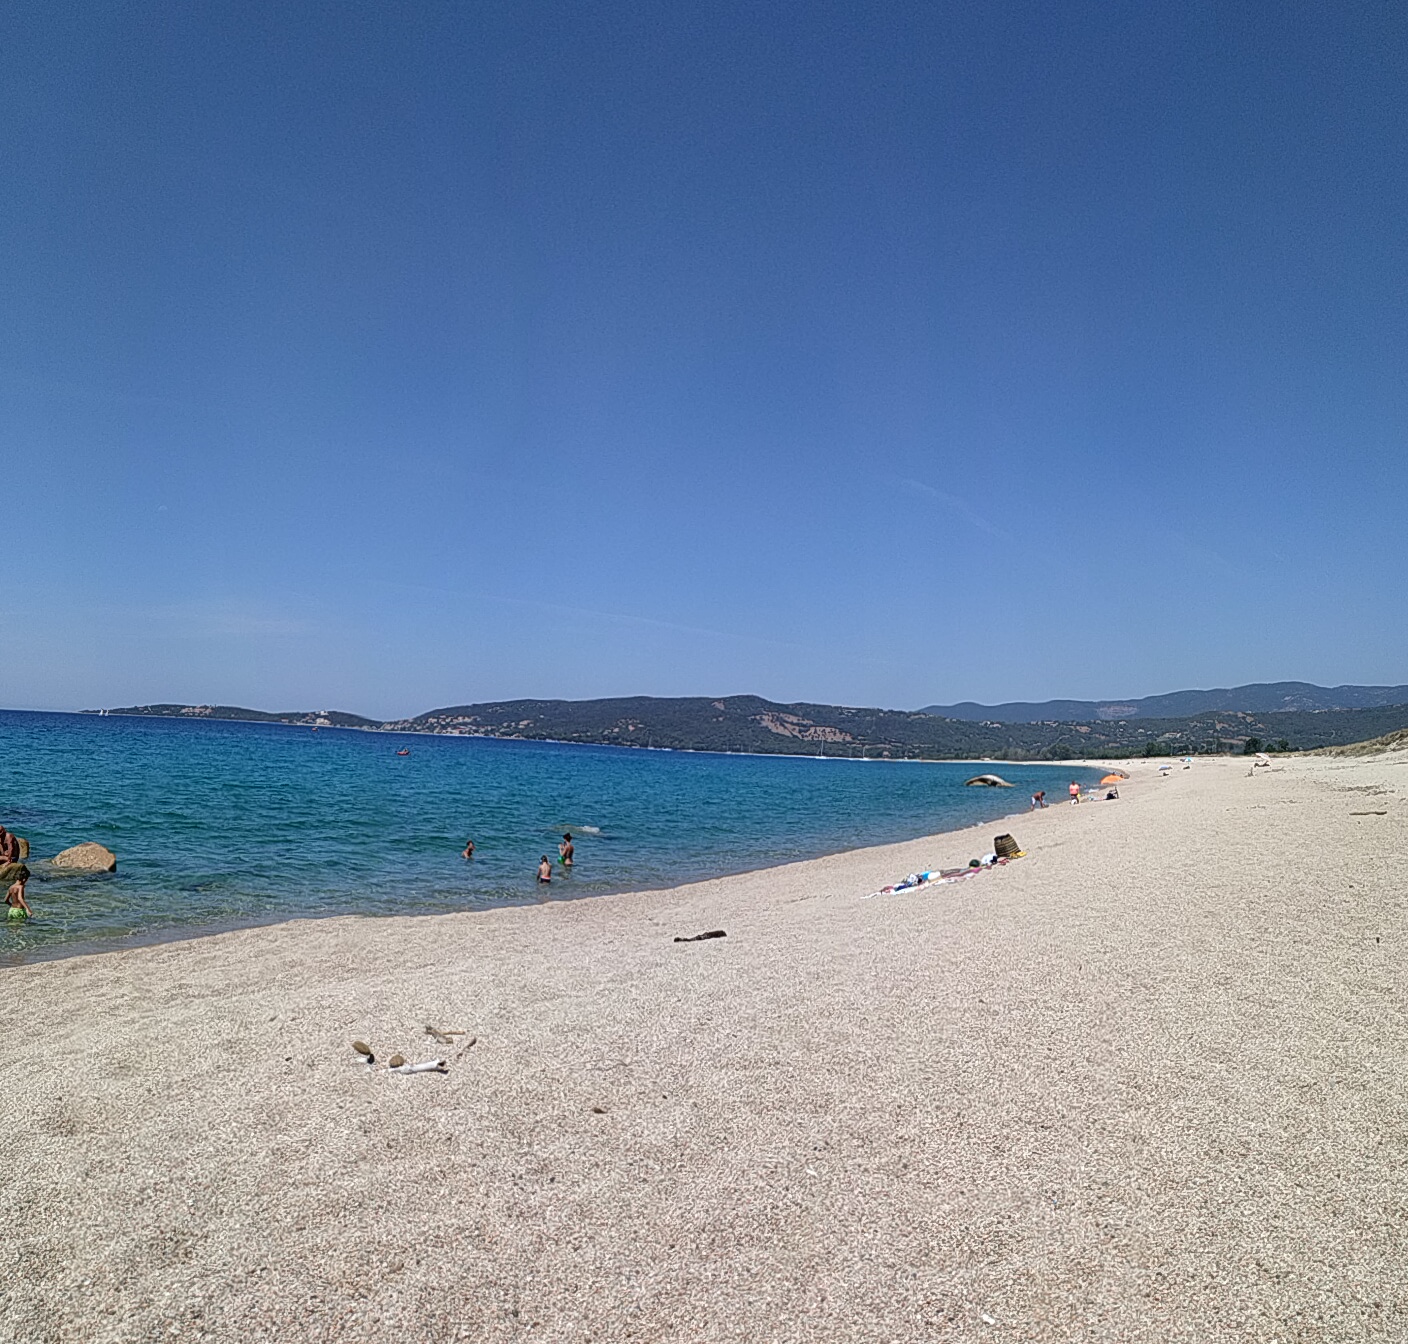 Photo de Tenutella beach - endroit populaire parmi les connaisseurs de la détente